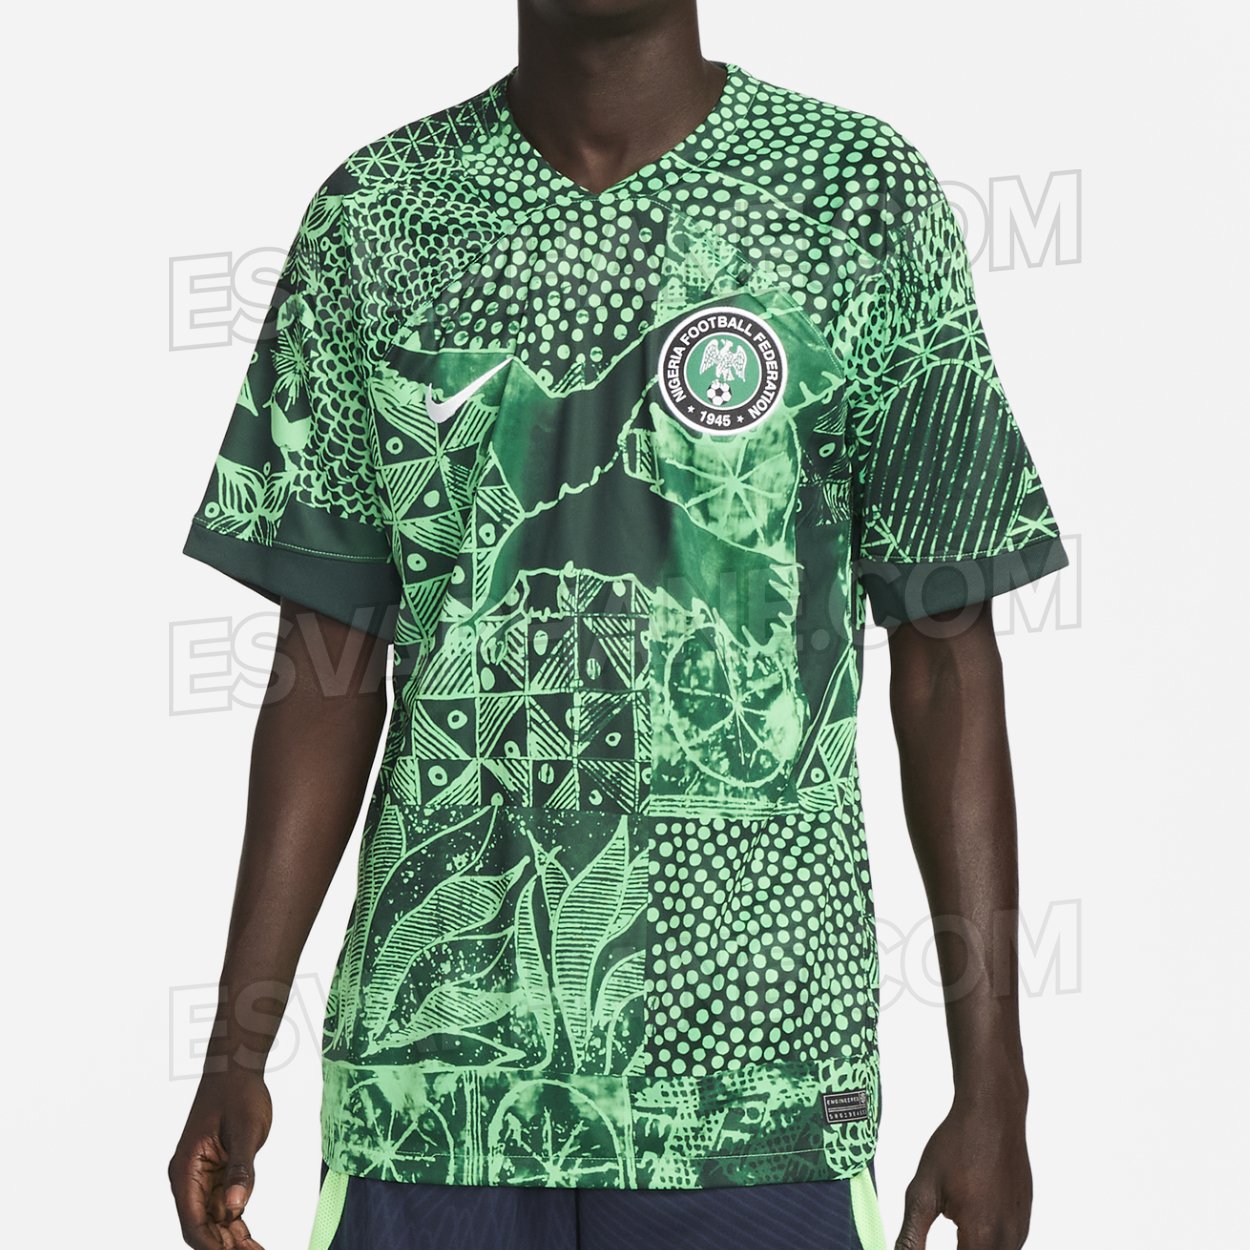 Lacasaca on Twitter: "Habemus camiseta de Nigeria para el 2022. Lamentablemente no participará del mundial pero camino que hizo Nike desde el 2018 hasta acá, diseñando la casaca nigeriana lo más